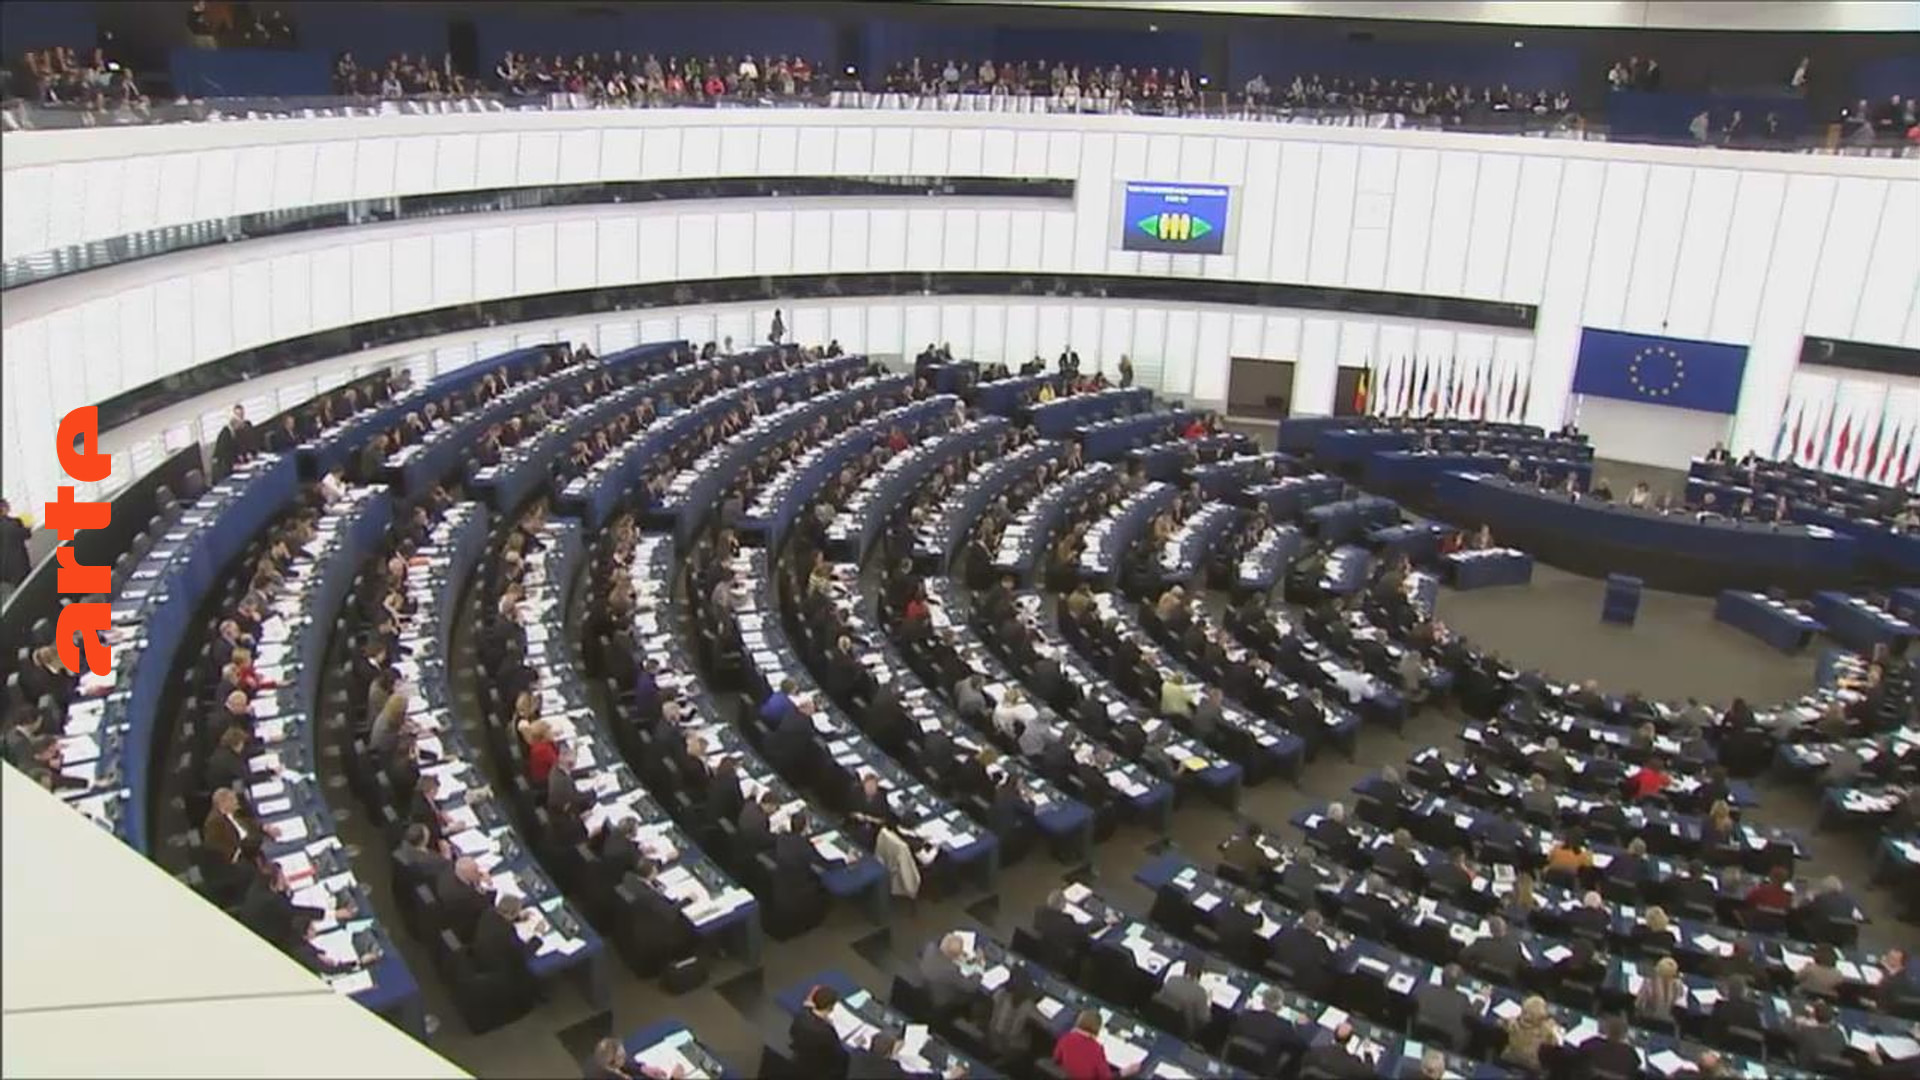 EU-Parlament: Warum in Straßburg? (2/5)